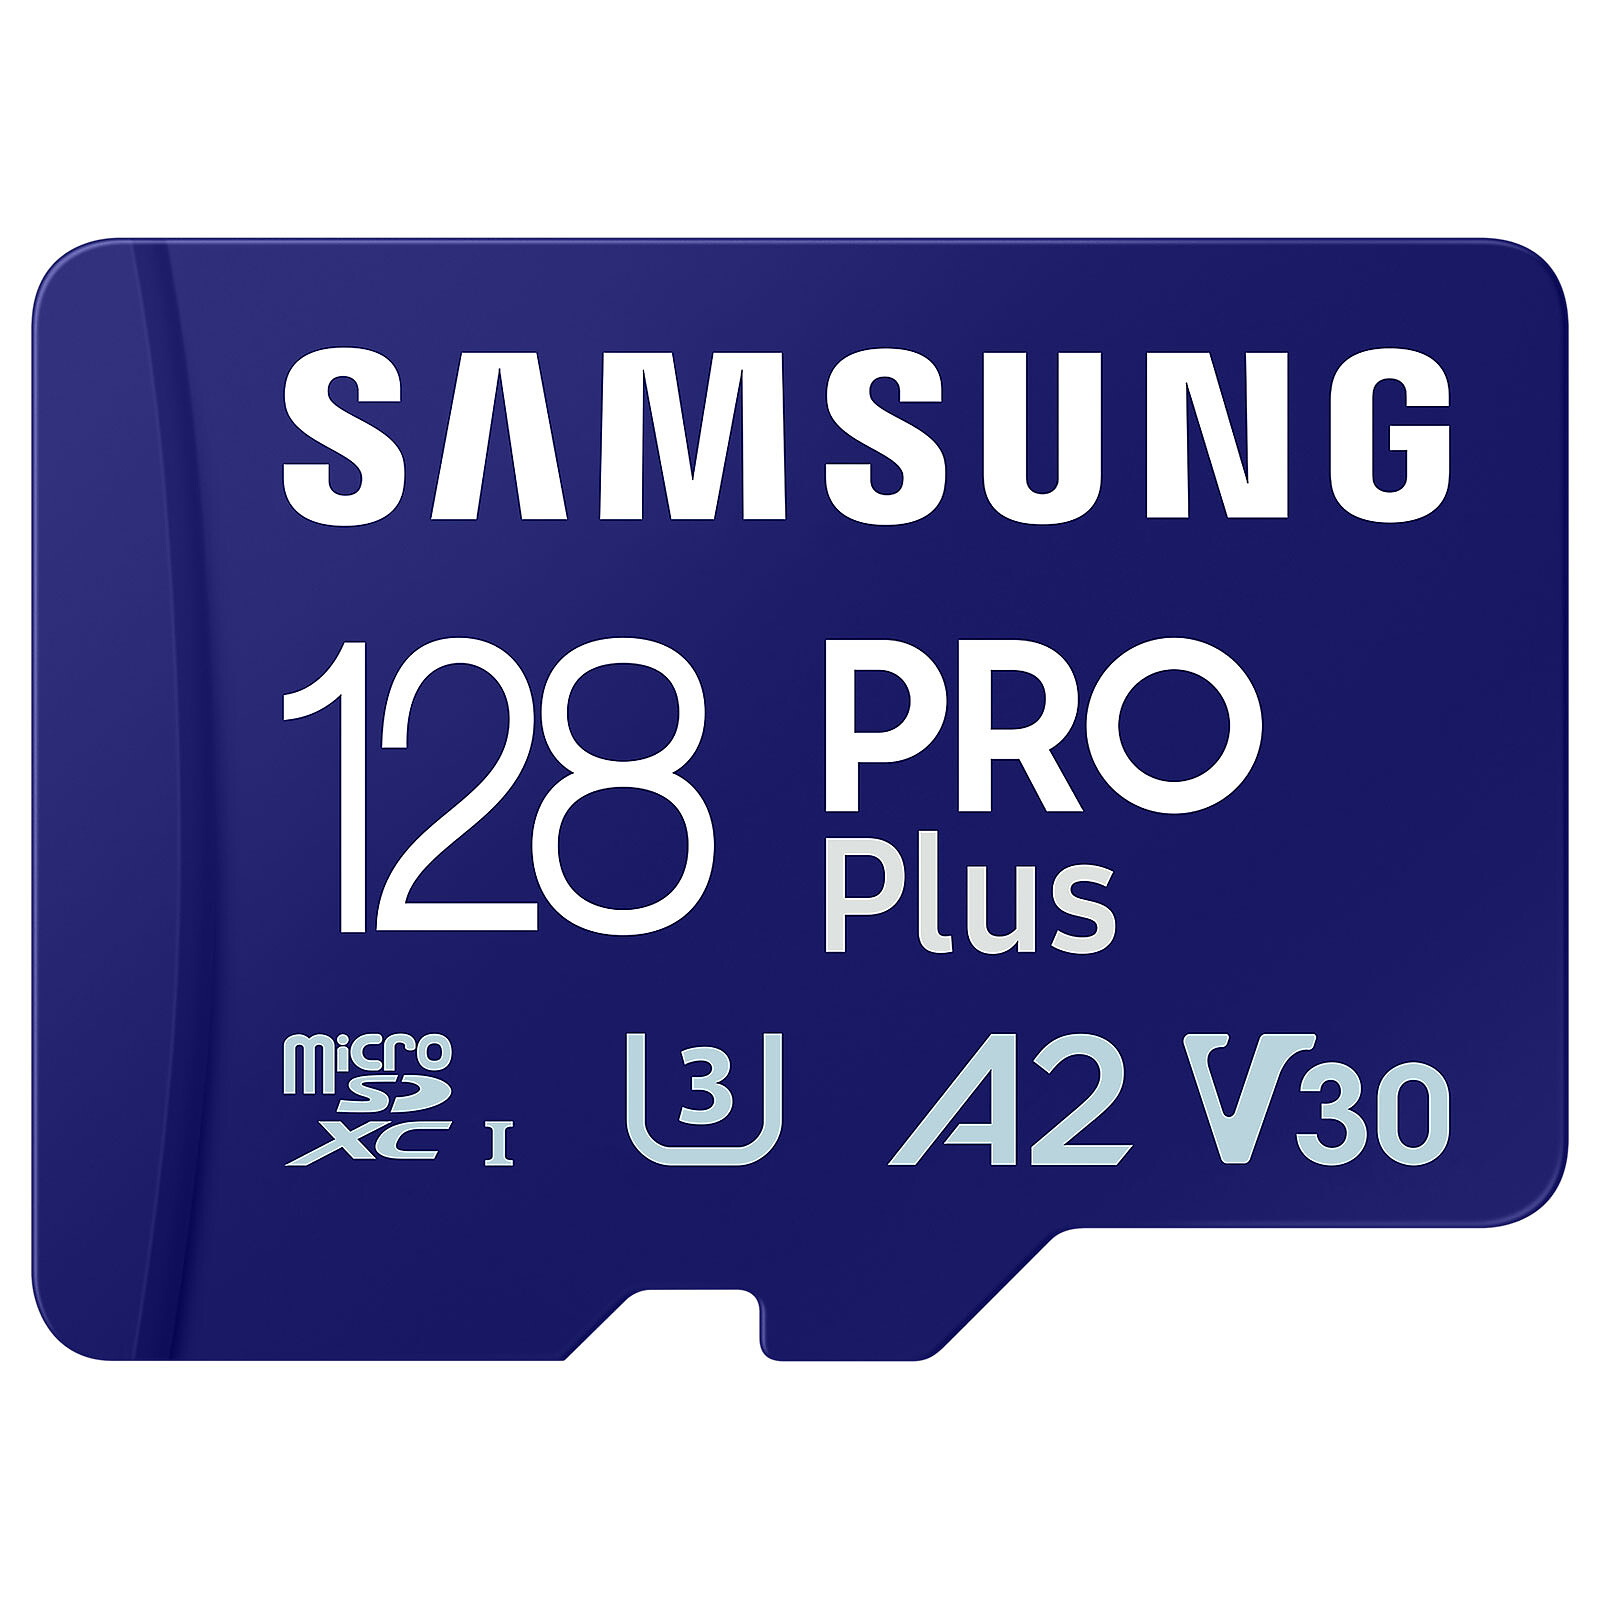 Samsung Pro Plus microSD 128 Go - Carte mémoire - Garantie 3 ans LDLC